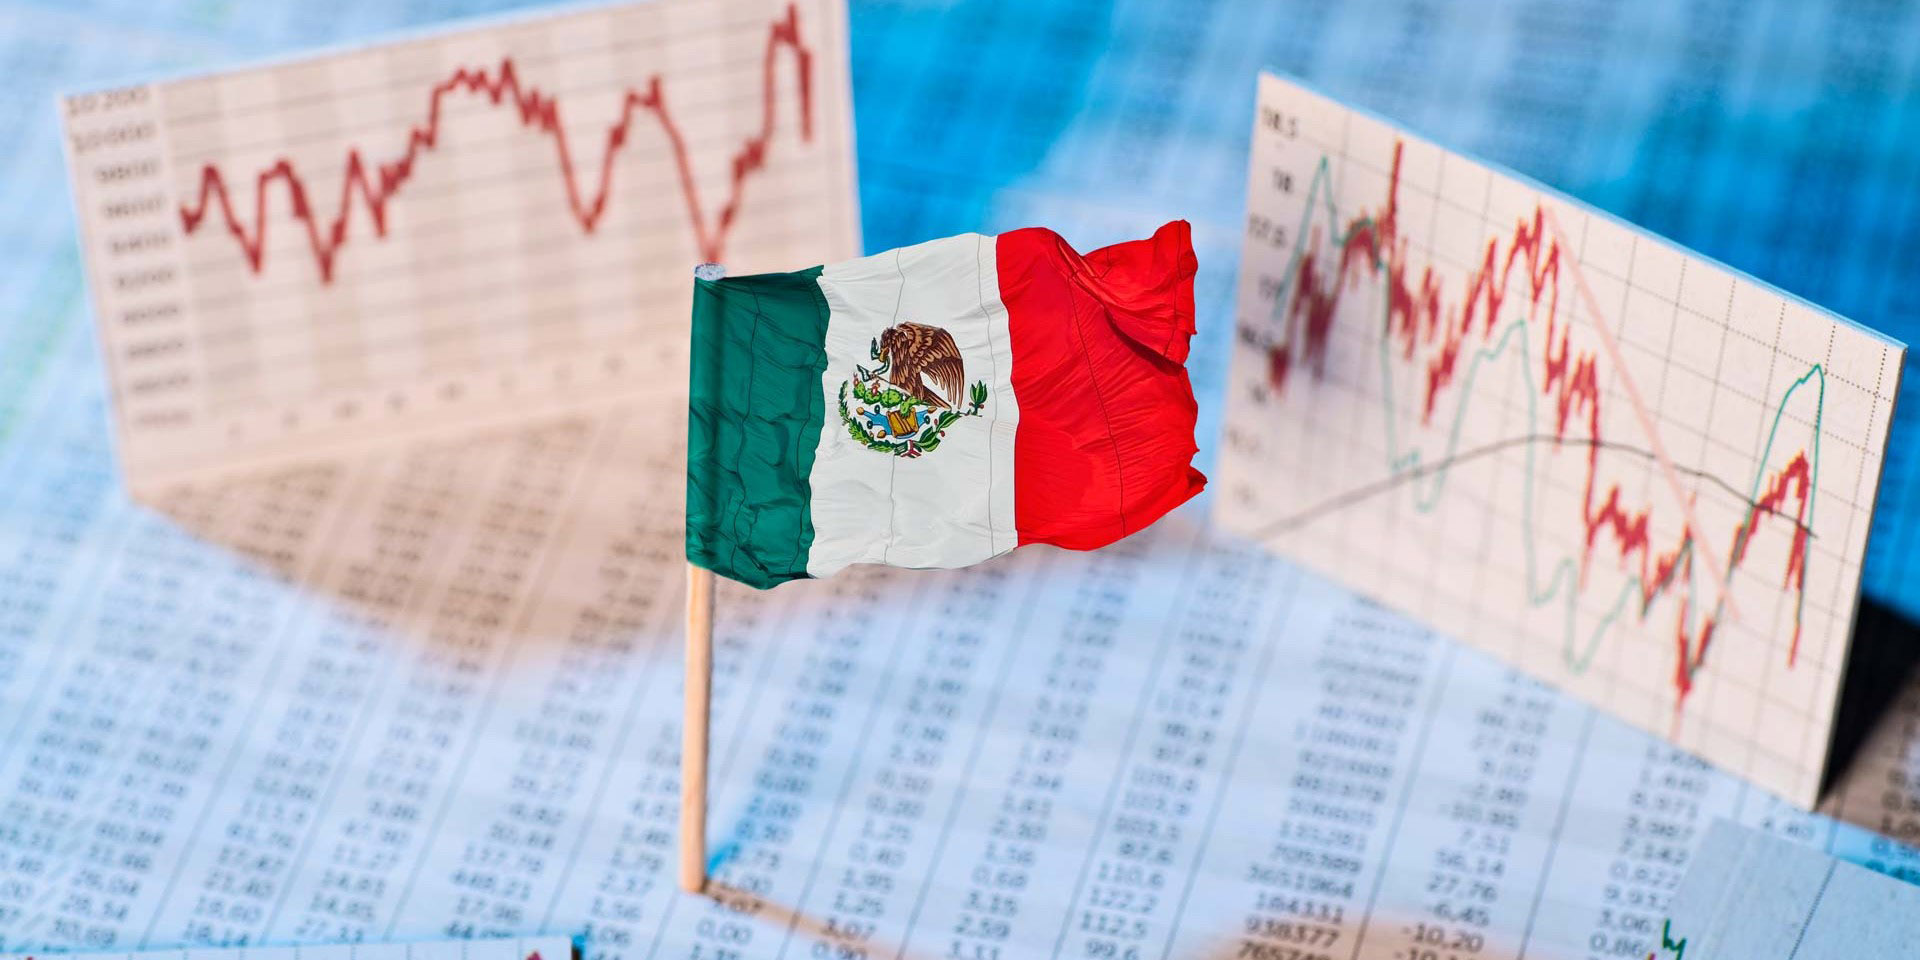 La economía está estancada: PIB de México cae un 0.2% al cierre del 3T | El Imparcial de Oaxaca